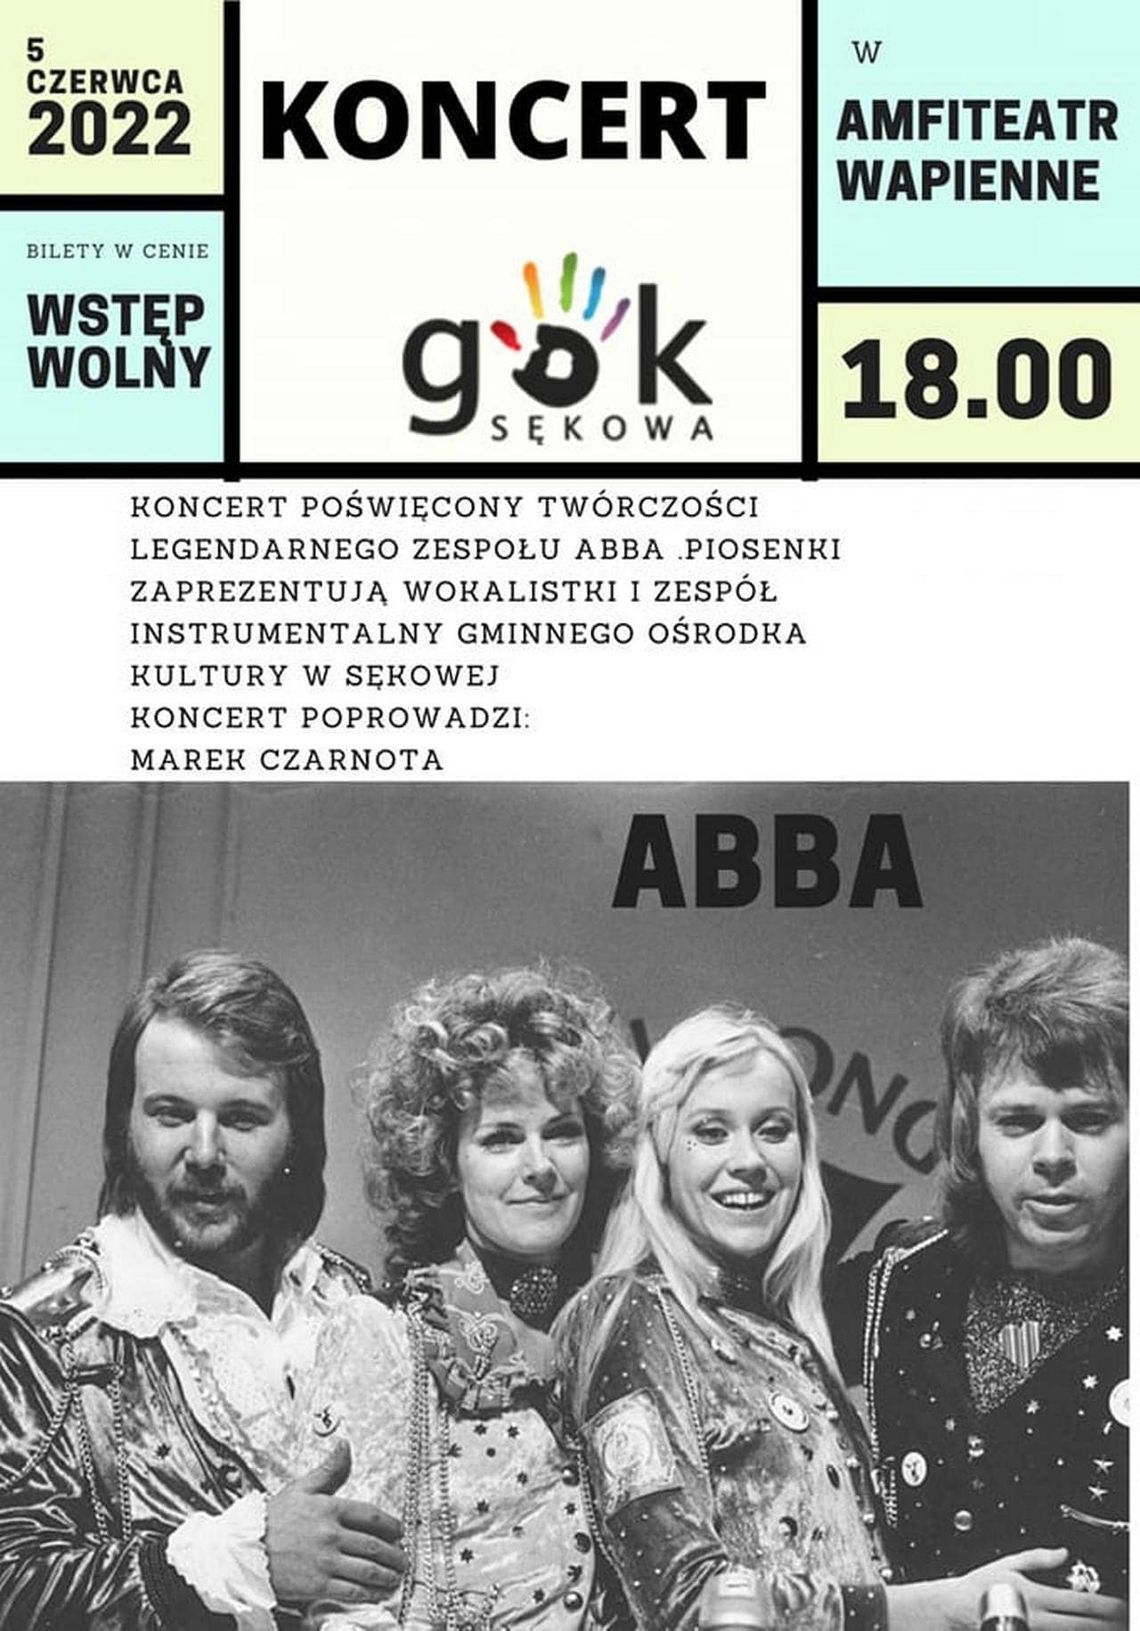 Koncert poświęcony twórczości legendarnego zespołu ABBA – Amfiteatr Wapienne | zapowiedzi imprez – halogorlice.info